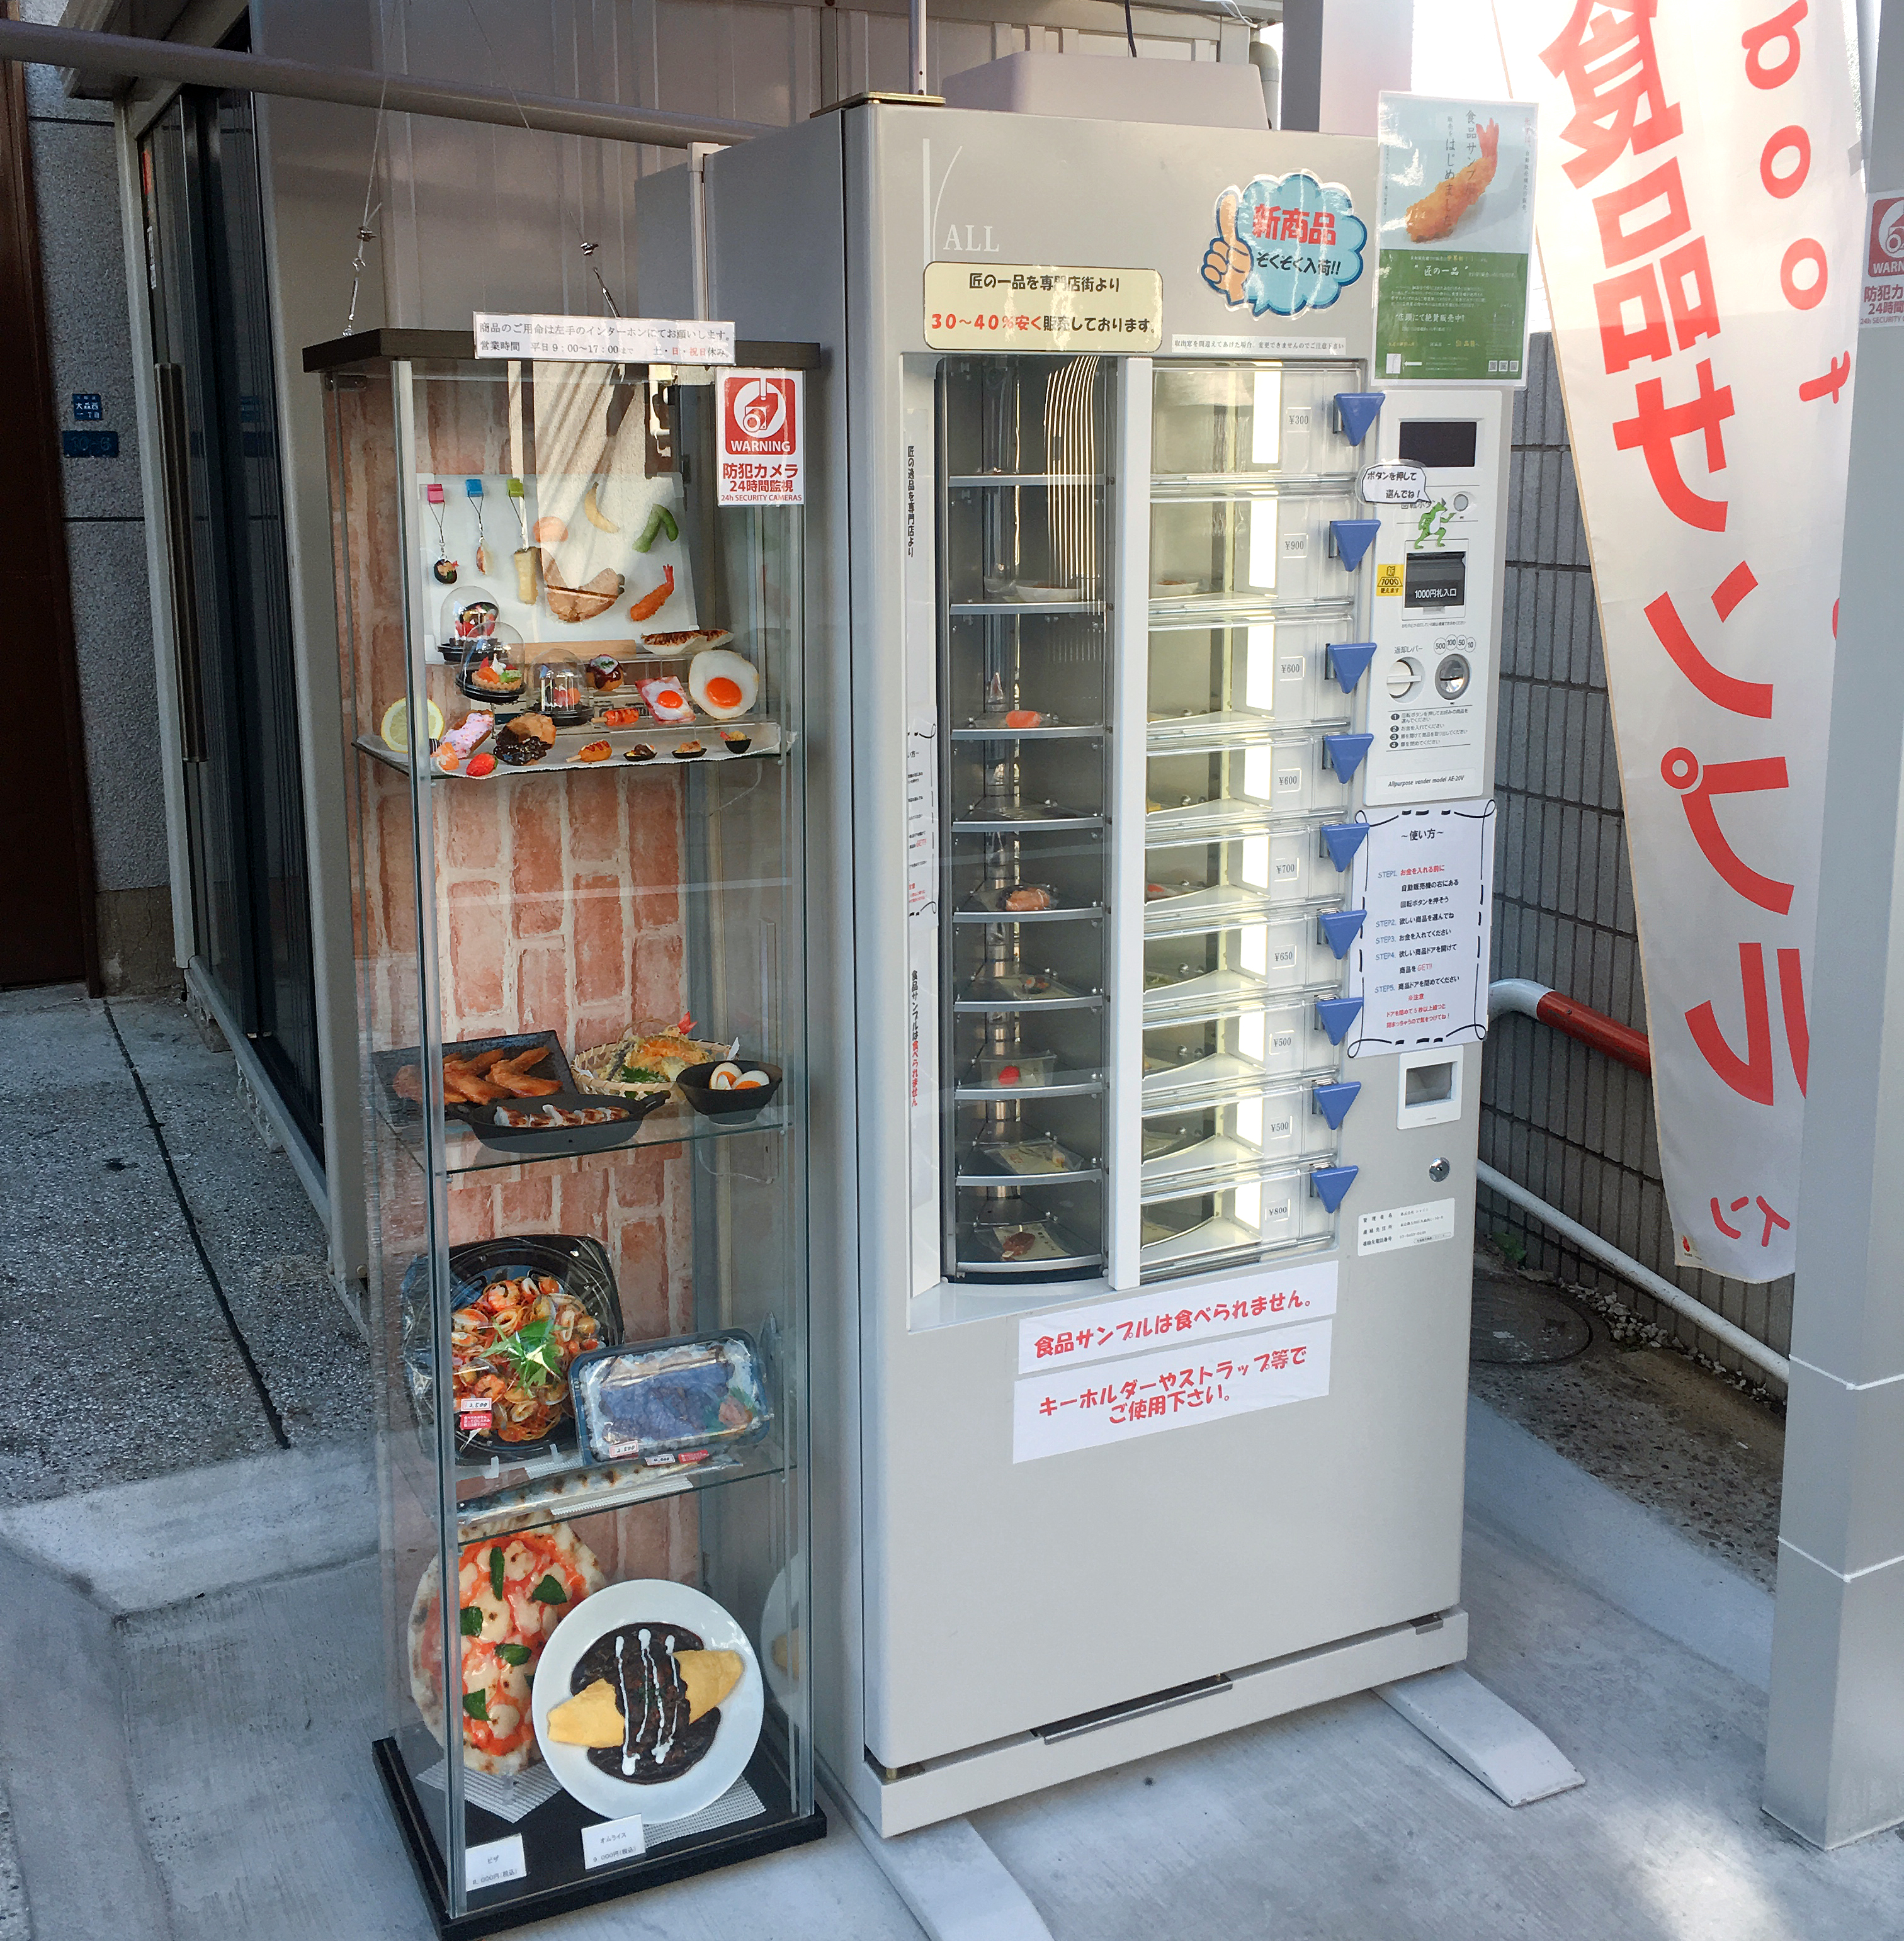 食品自販機かと思ったら 食品サンプル自販機 でマジびびった メーカー直販だから結構お安いんですよッ ロケットニュース24